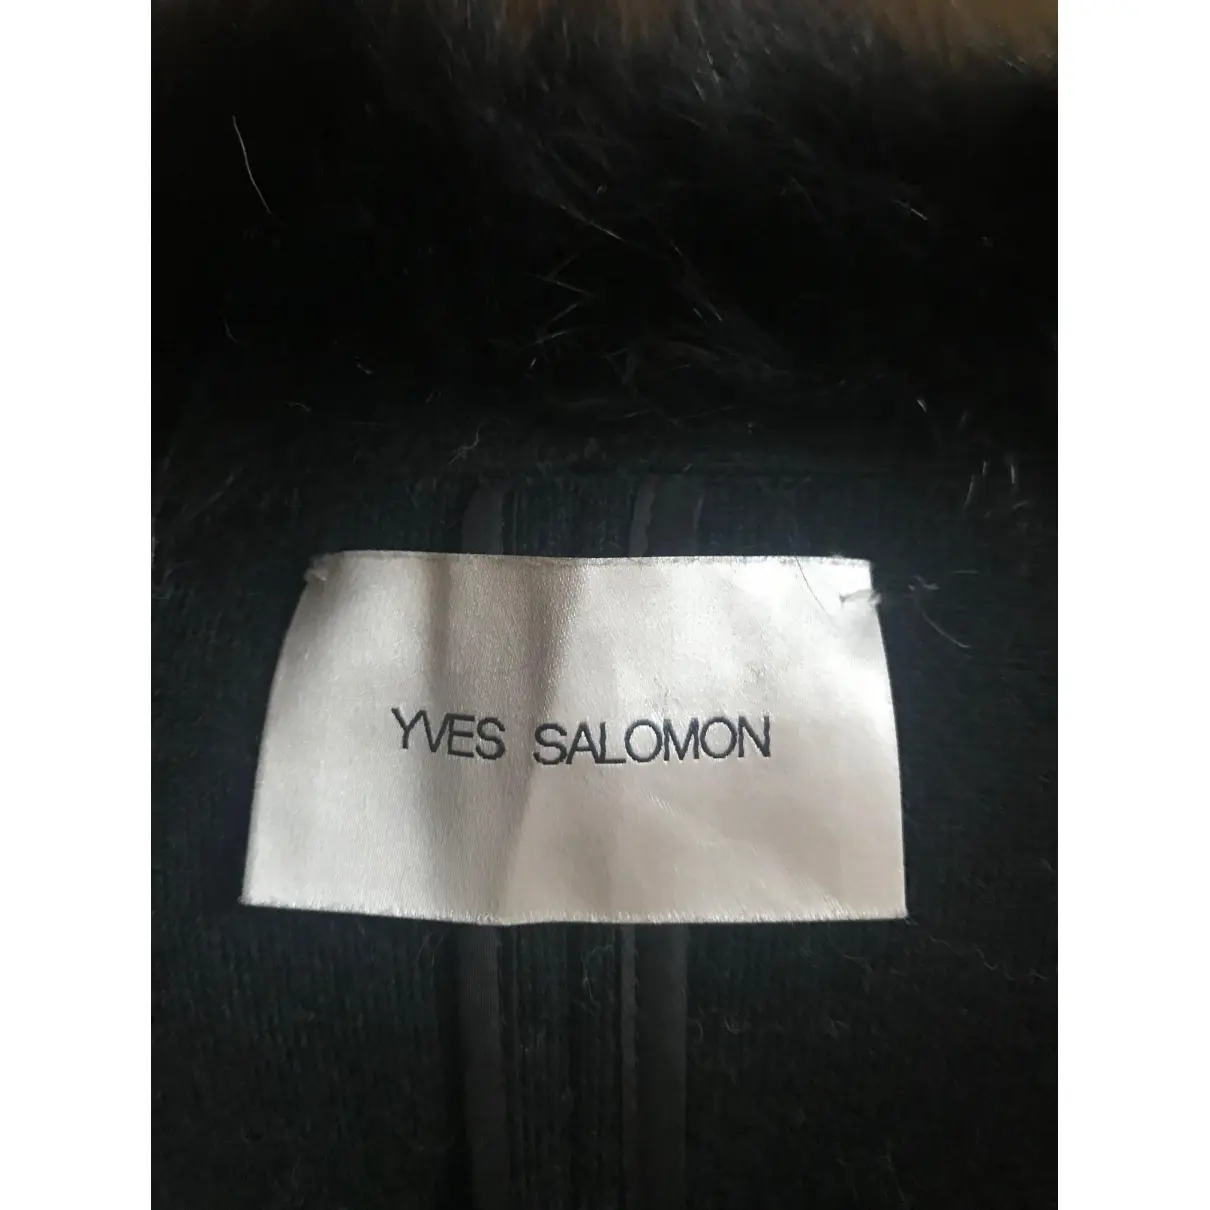 Buy Yves Salomon Wool coat online